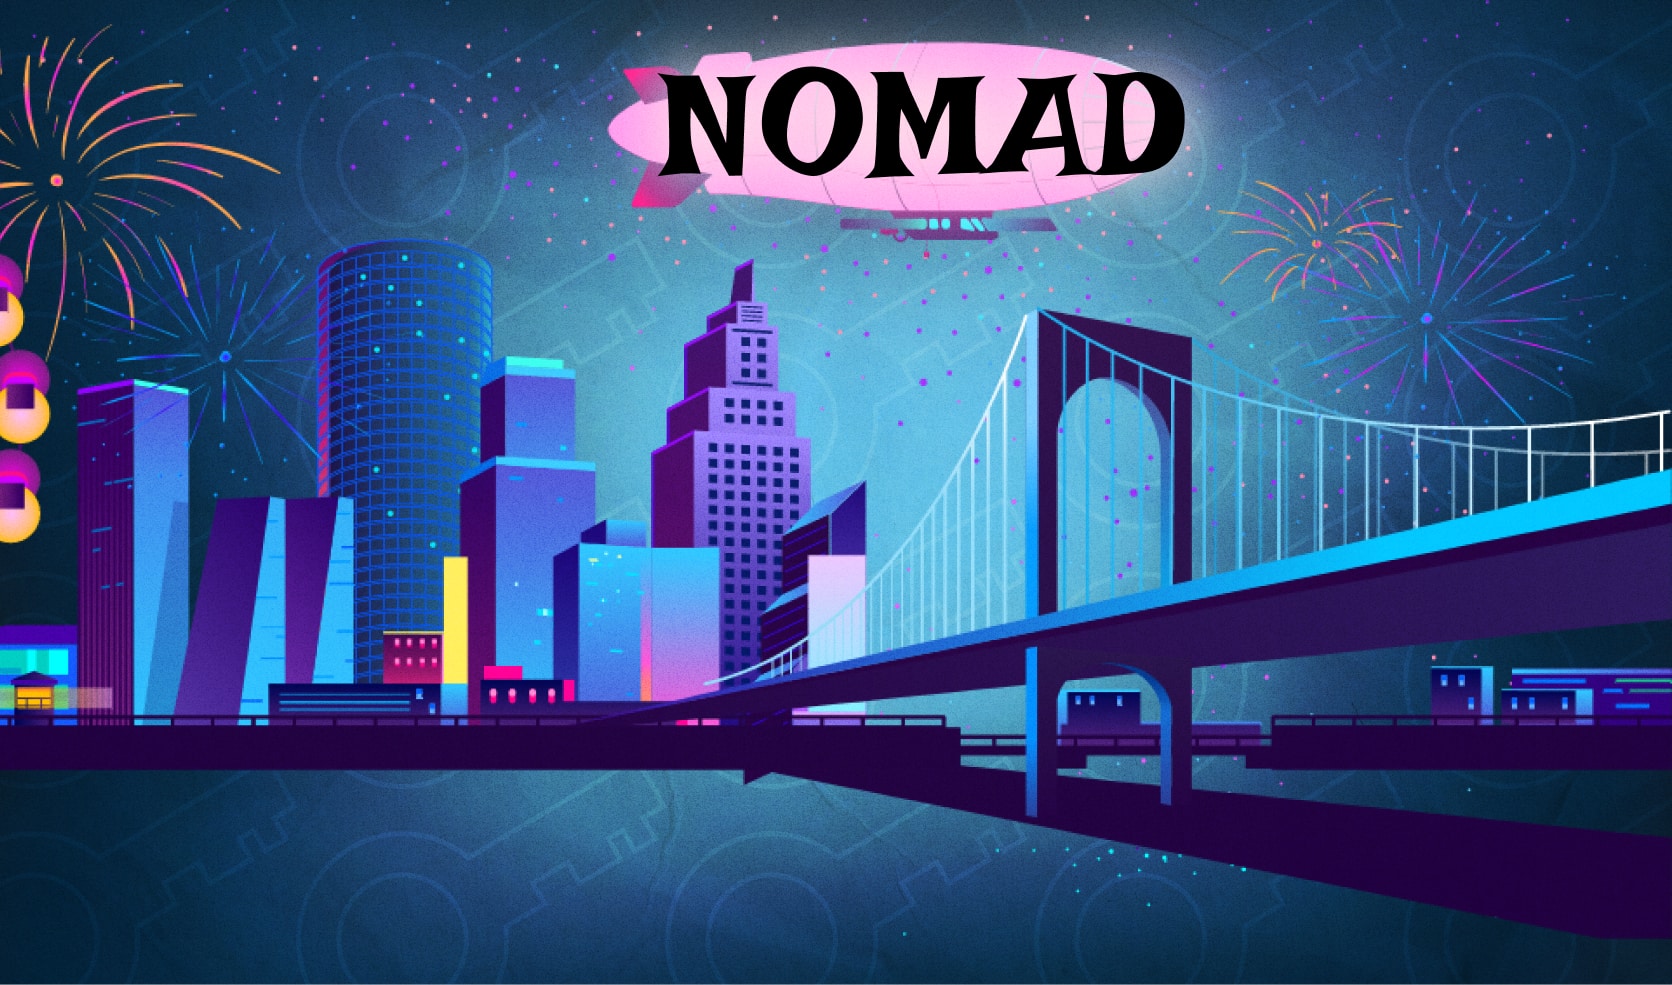 Администрация Nomad готовит перезапуск кроссчейн-моста Сейчас идет процесс сбора пользовательских данных для выплаты компенсаций